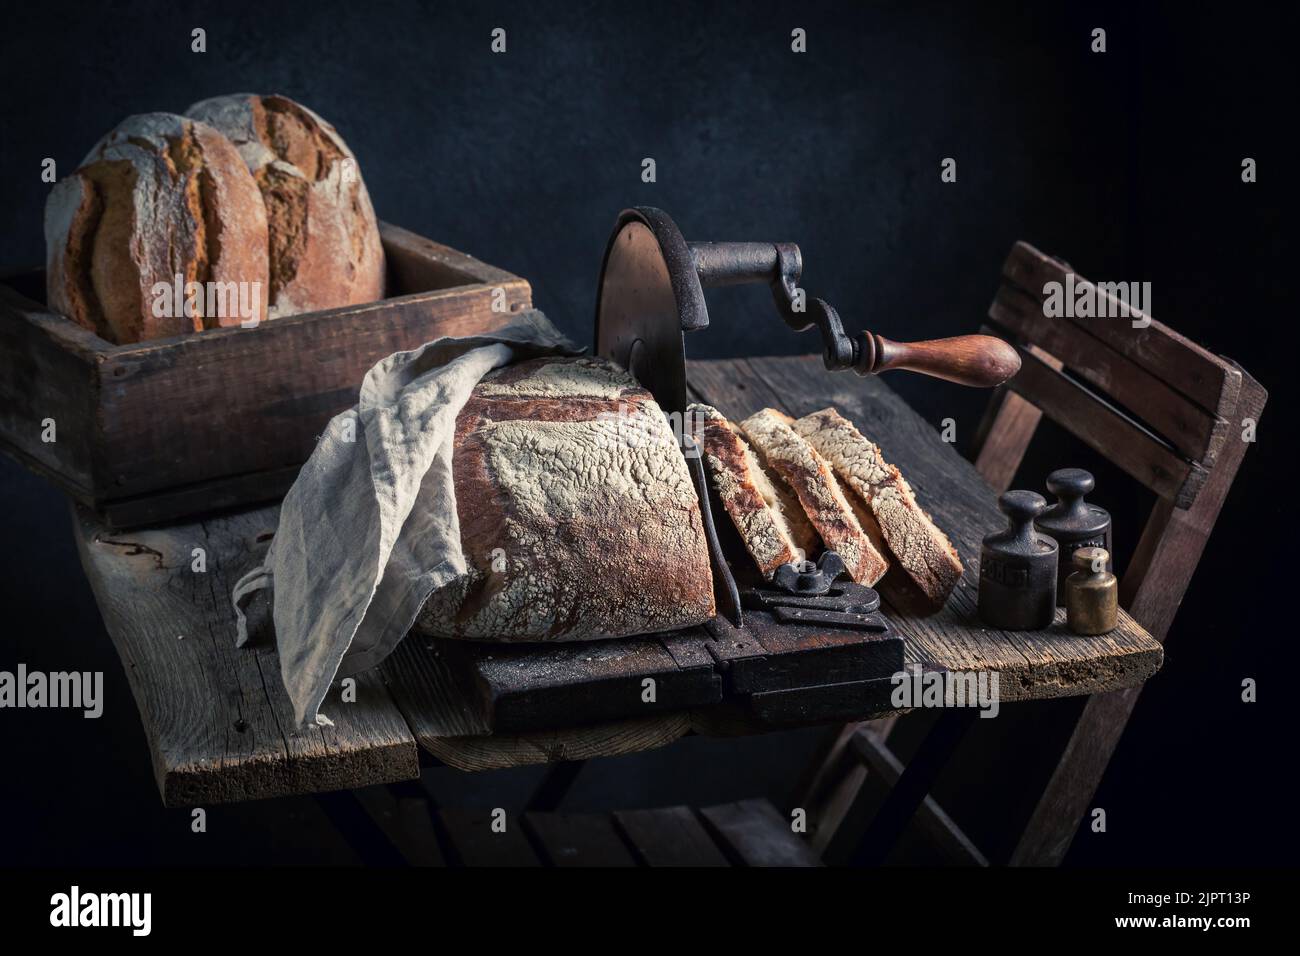 Vintage Bread Slicer 🍞, sliced bread, bread